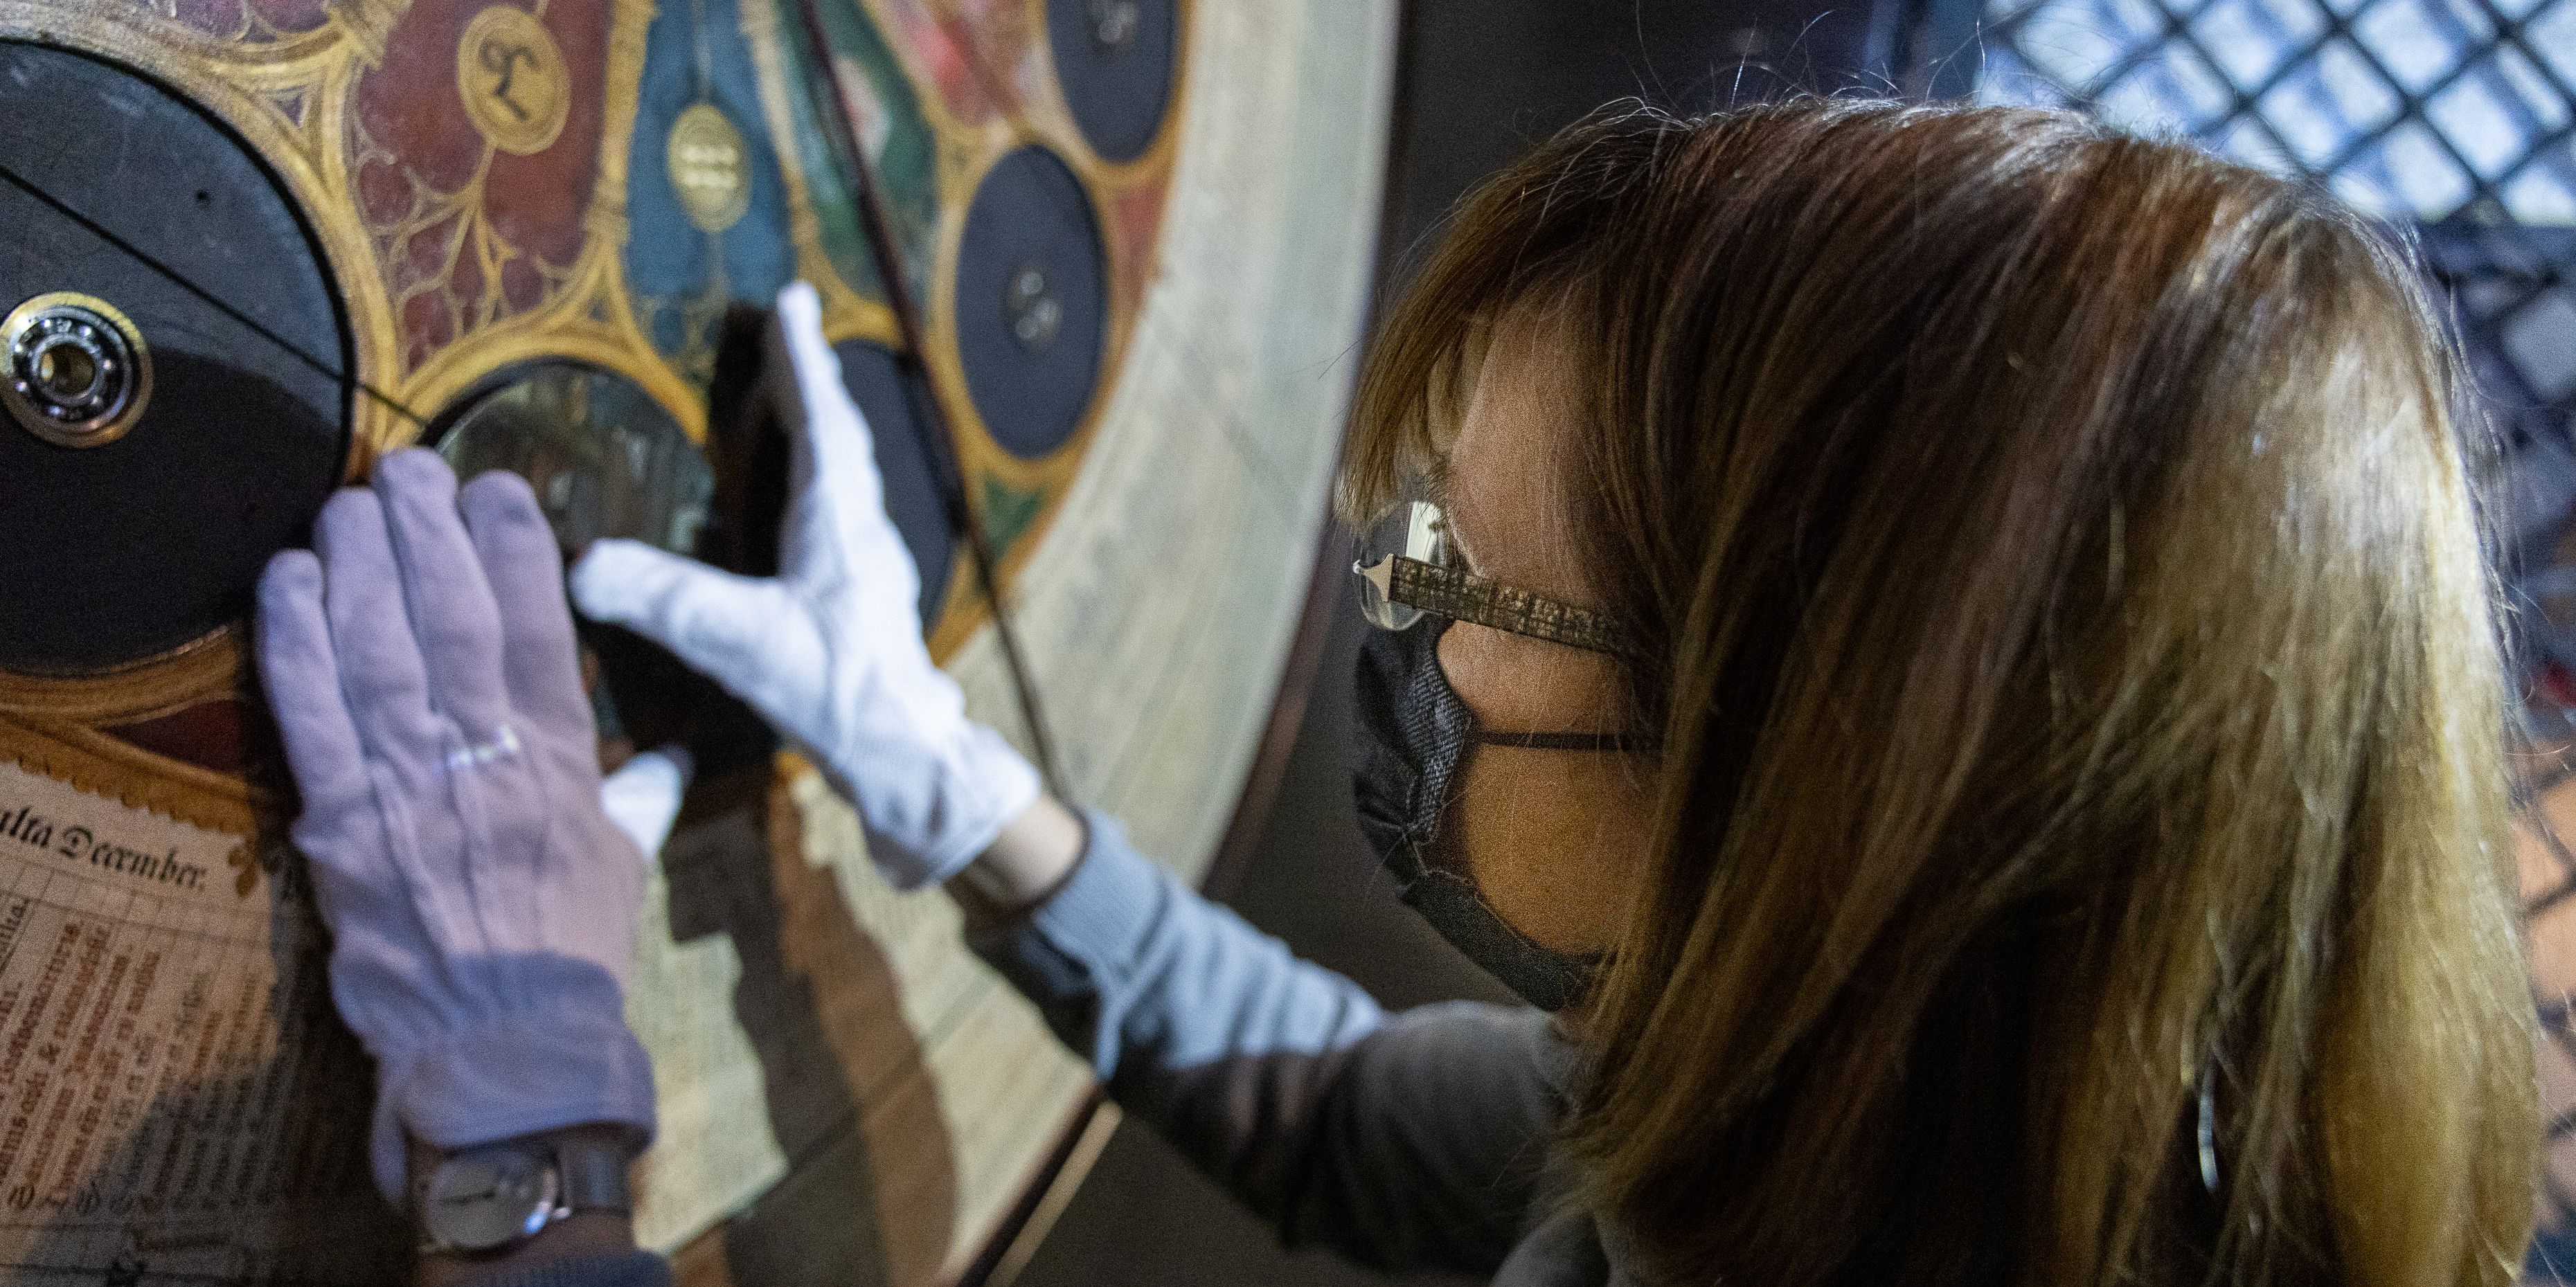 Für Diplom-Restauratorin Marita Schlüter war die Arbeit an der Astronomischen Uhr eines der aufwändigsten, lehrreichsten, aber auch interessantesten Projekte“ ihrer bisherigen selbstständigen Tätigkeit.